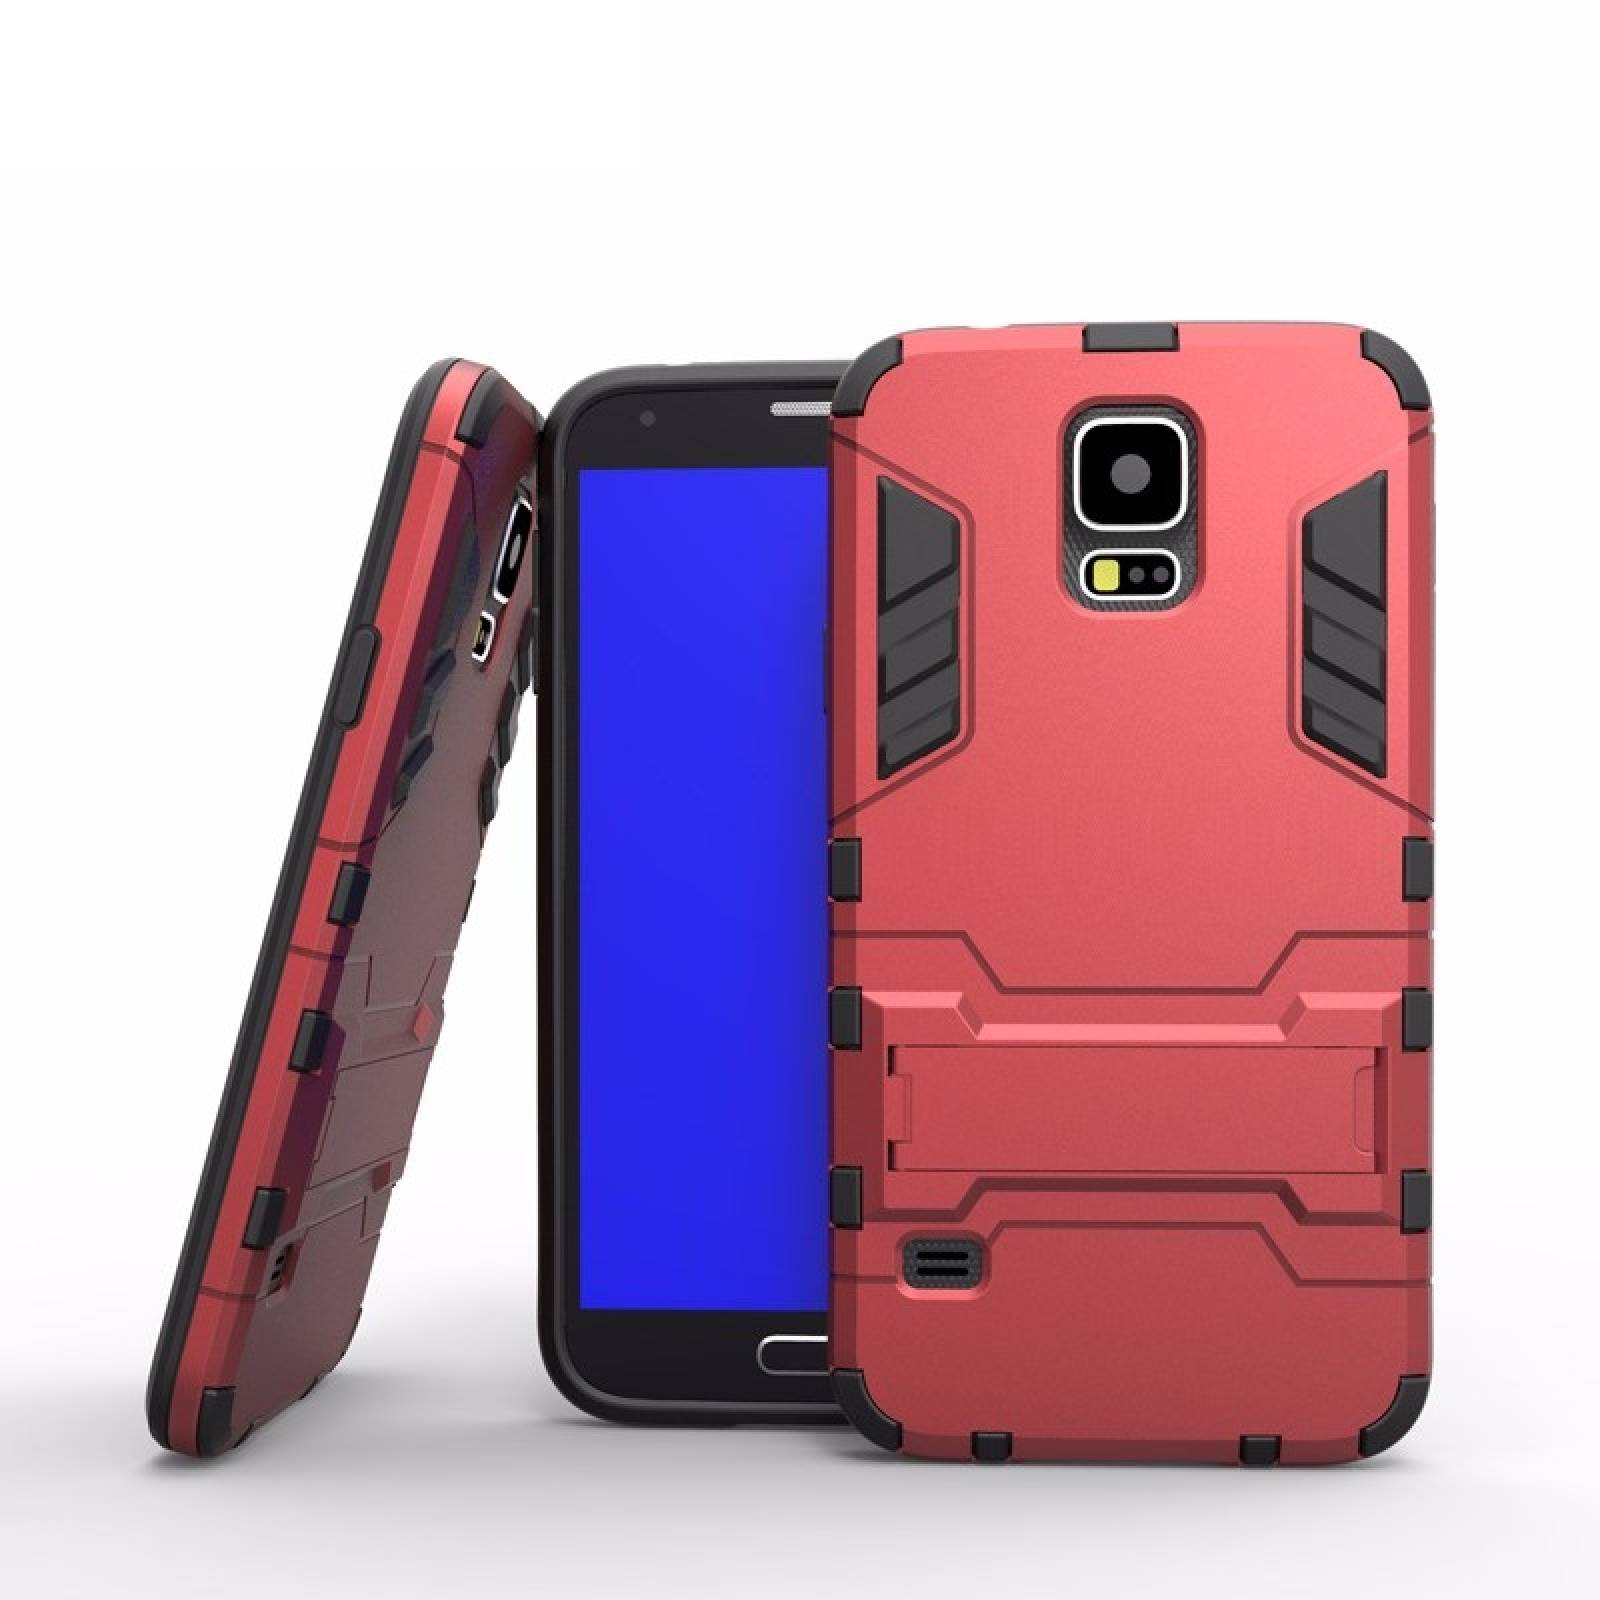 Funda Case + Cristal Galaxy S5 SM-G900M Protector Uso Rudo Iron Bear